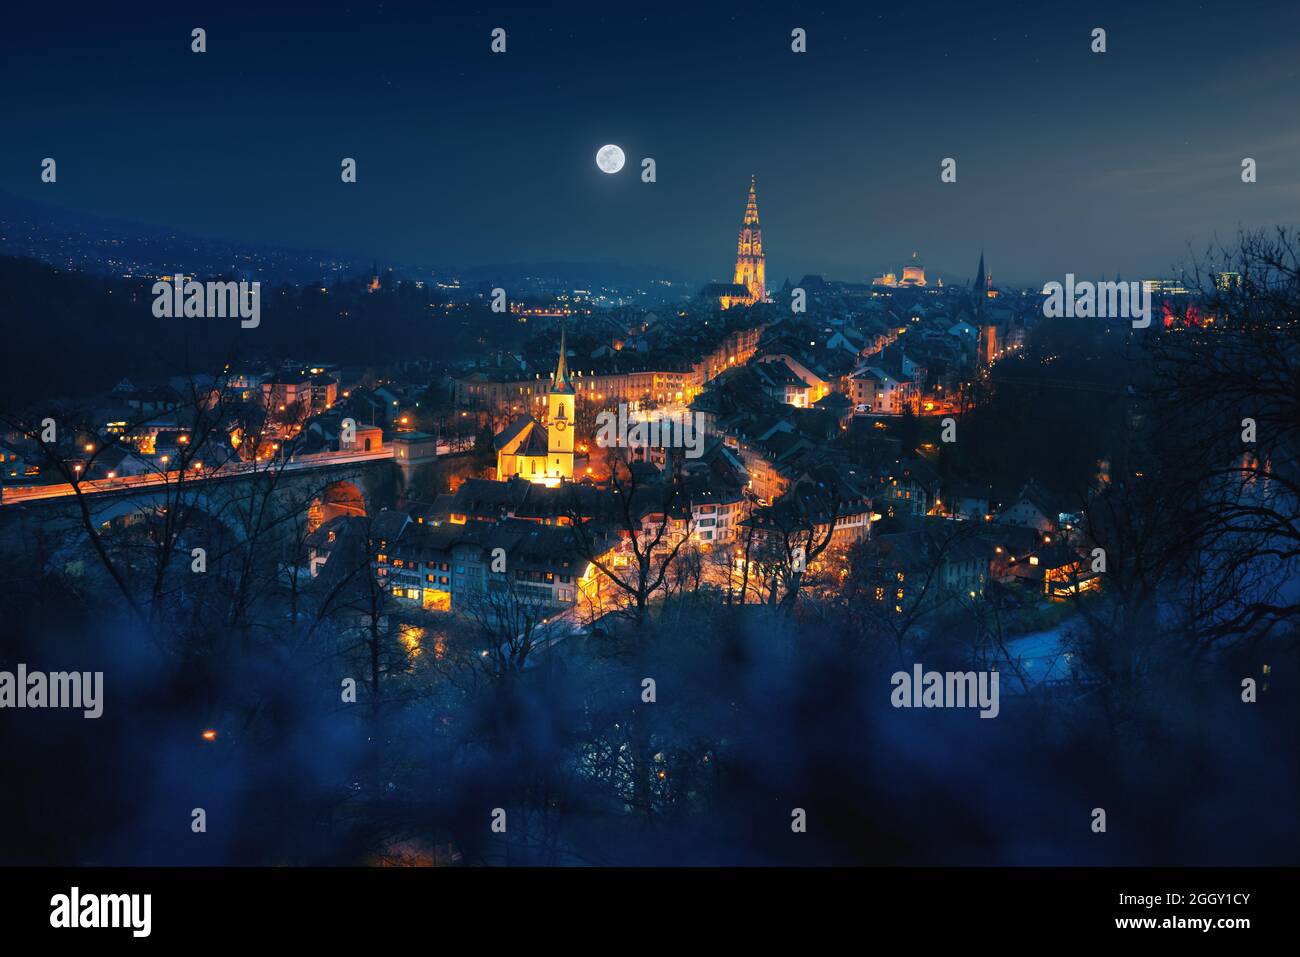 Beleuchtete Ansicht der Berner Skyline bei Nacht mit Vollmond - Bern, Schweiz Stockfoto